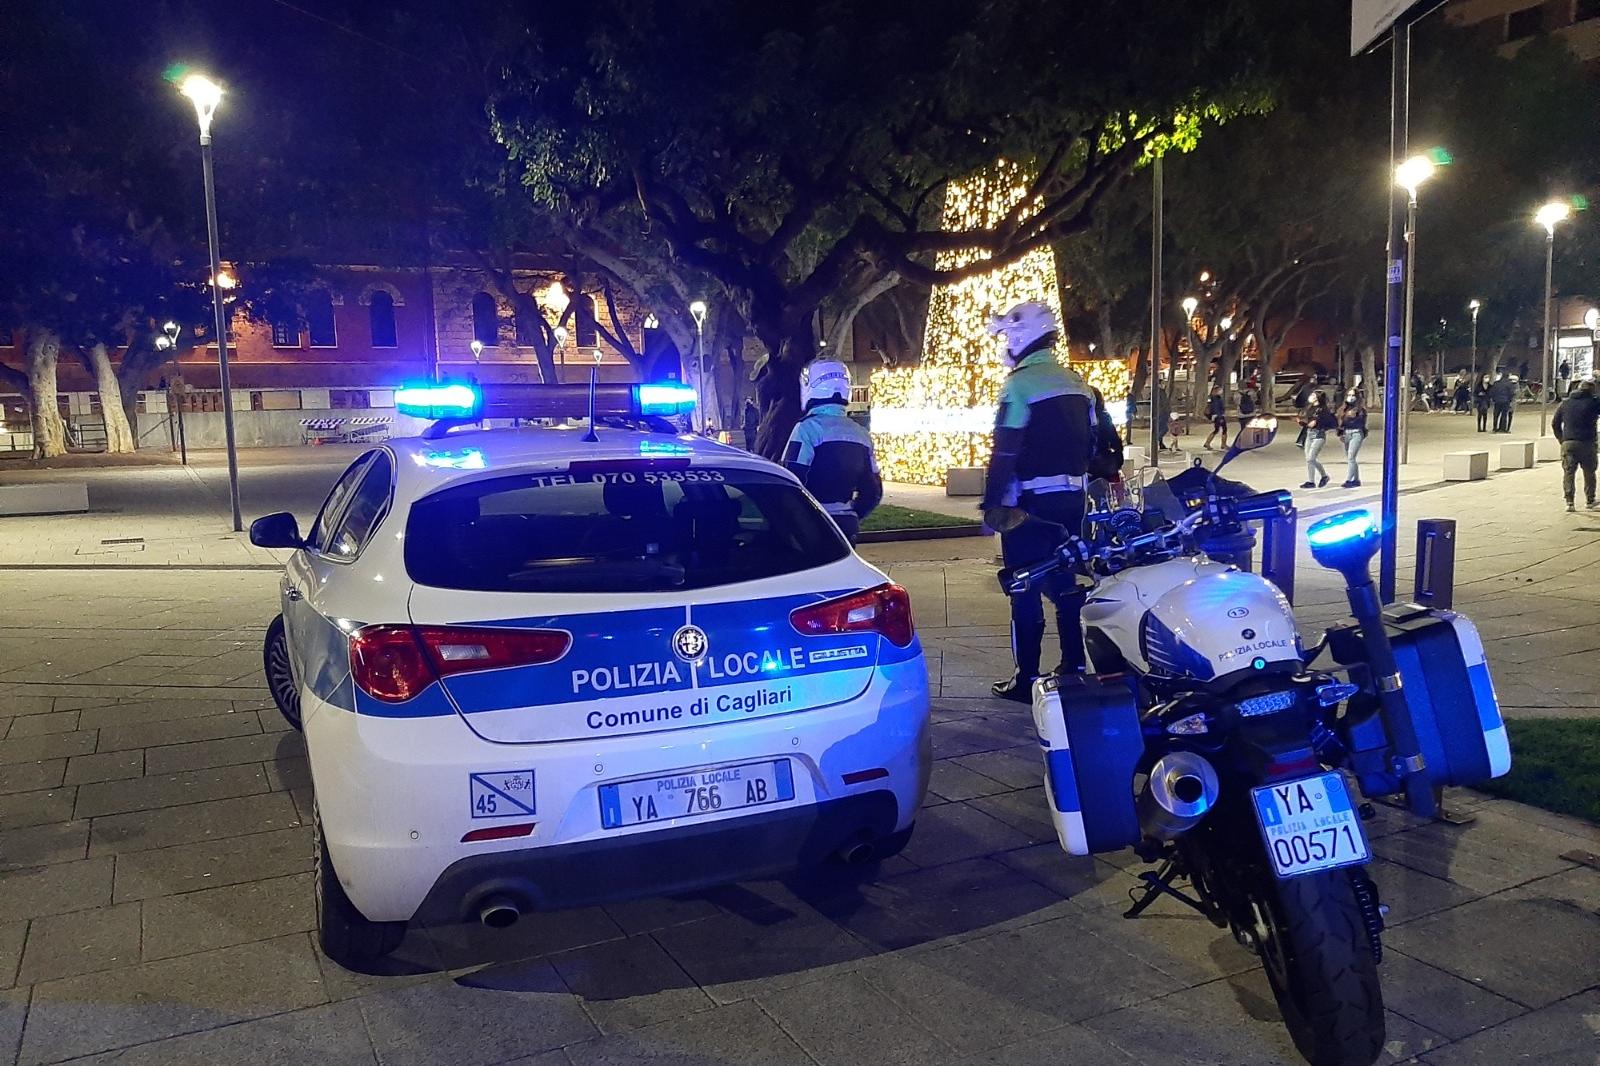 A bordo di uno scooter fugge dopo l’alt, inseguimento a Cagliari